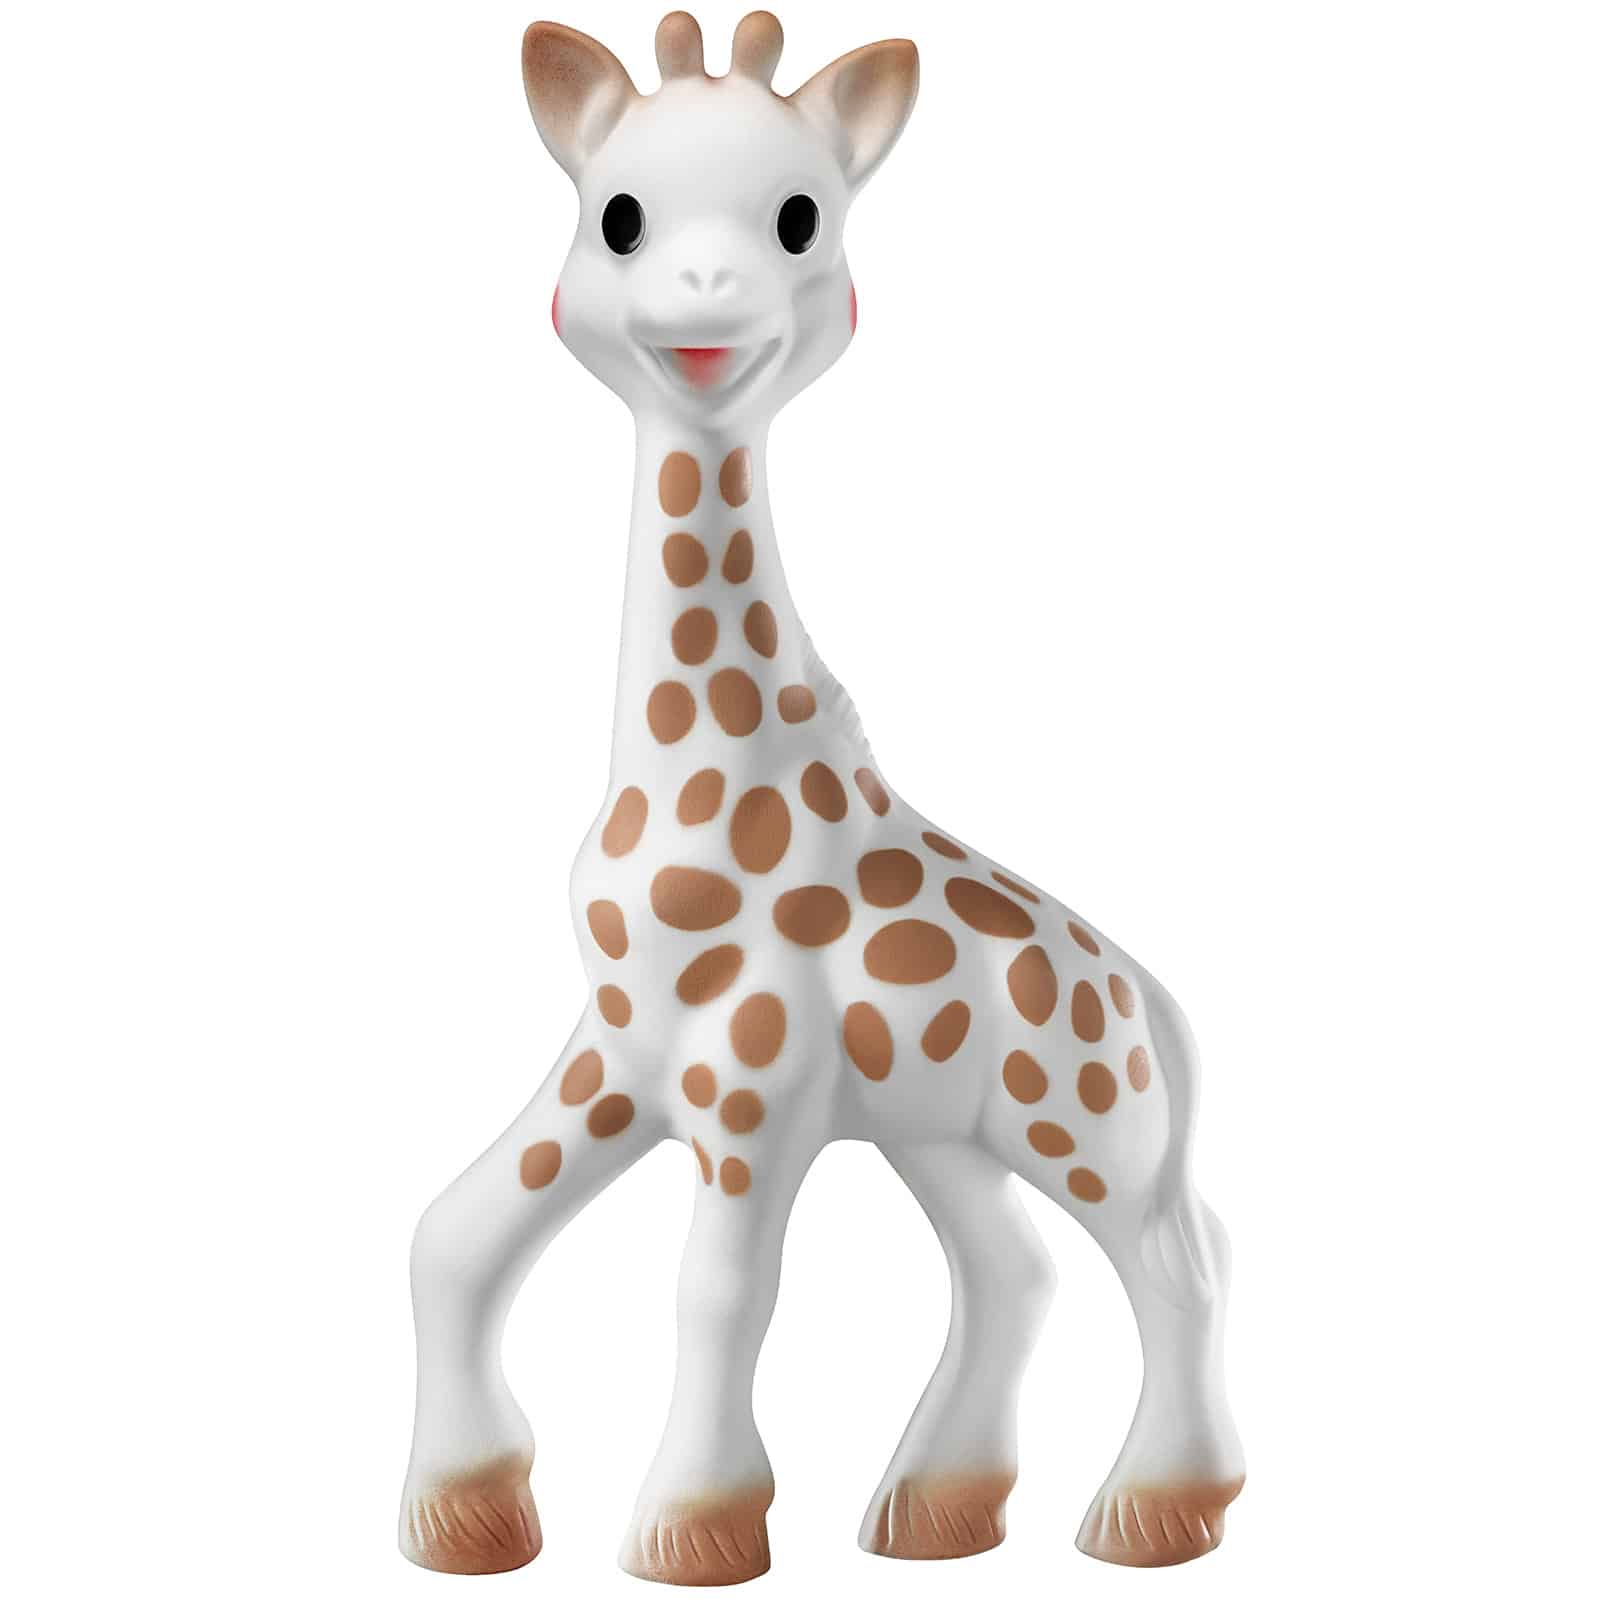 Couverture Bébé Personnalisée Girafe - Cadeau Naissance